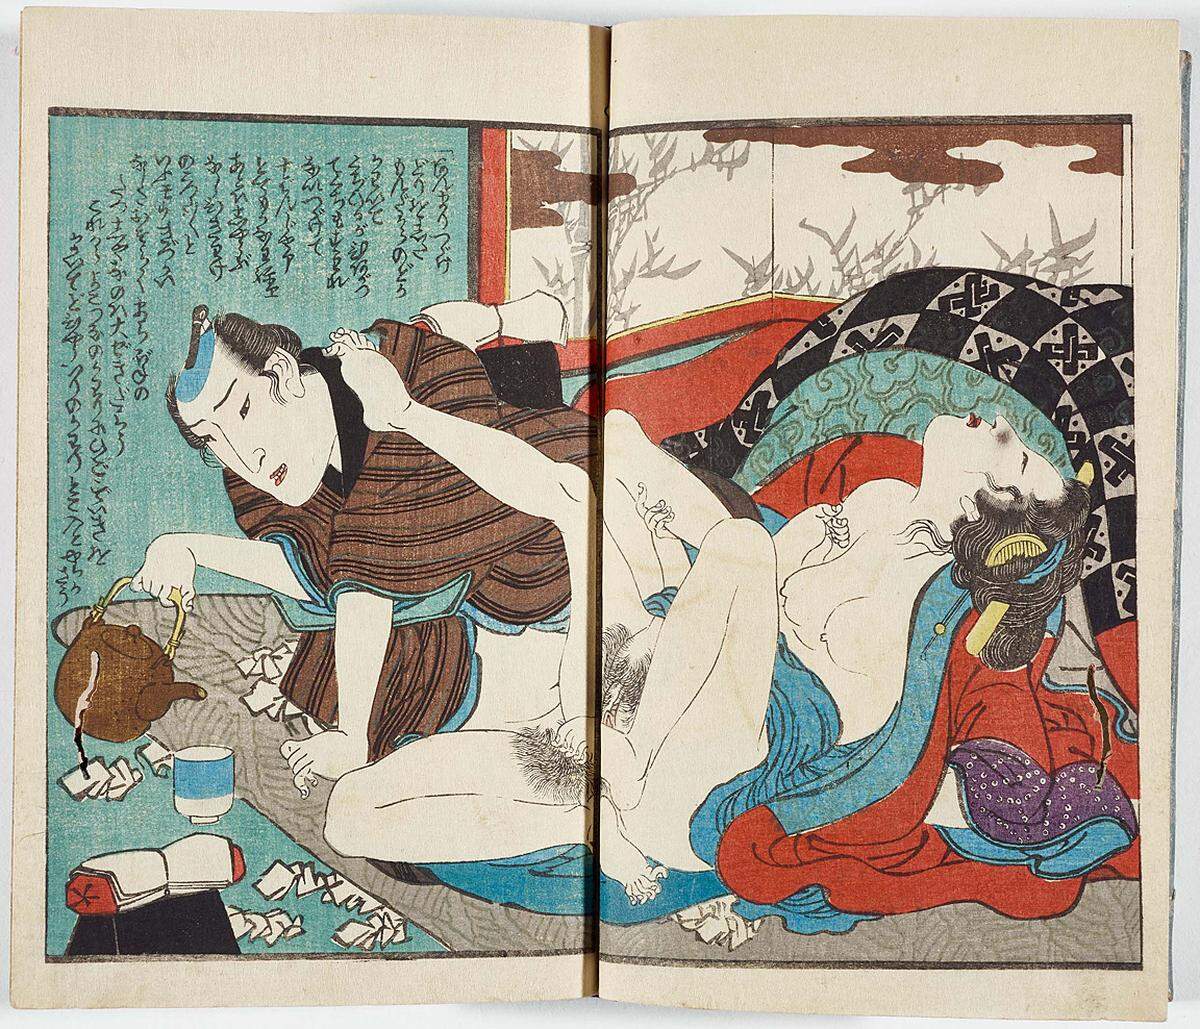 Das ausgesprochene Anliegen der Ausstellung aber ist die kunsthistorische Einordnung der Gattung. Anders als der Großteil der expliziten Pornografie in Europa waren Shunga eine der Haupteinnahmequellen der angesehensten Meister der Holzschnittkunst (Ukiyo-e). Utagawa Kunimaro (ca. 1830–1870), Beim Teetrinken, um 1860/70. Illustration aus einem dreibändigen Buch. Farbholzschnitt